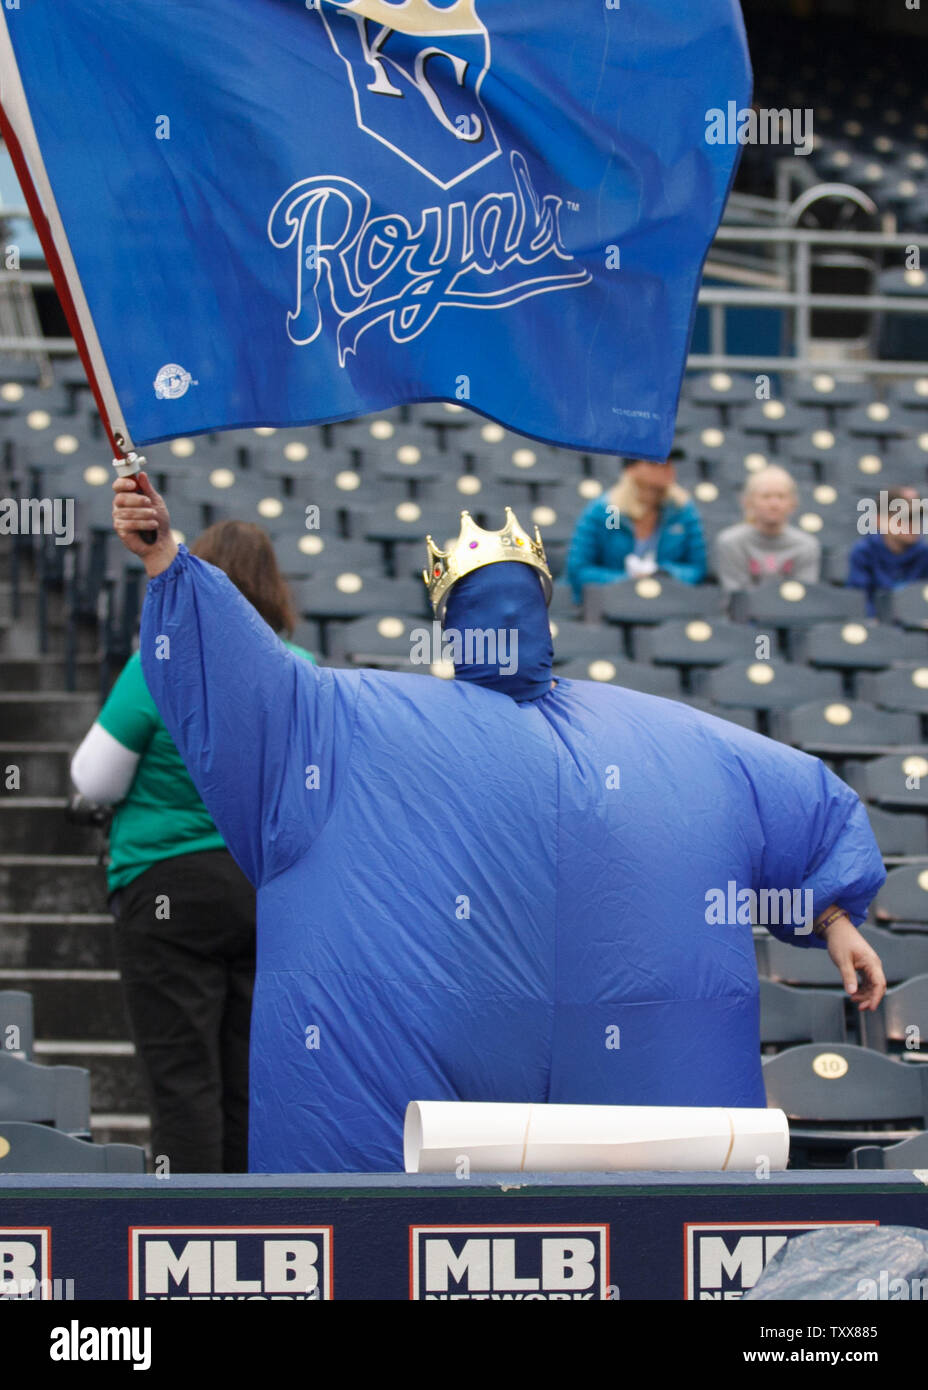 Un ventilador de la Realeza en un traje inflable olas un pabellón antes del juego 2 de la Serie Divisional de la Liga Americana contra los Astros de Houston a Kauffman Stadium de Kansas City, Missouri, el 9 de octubre de 2015. Foto de Jeff Moffett/UPI Foto de stock